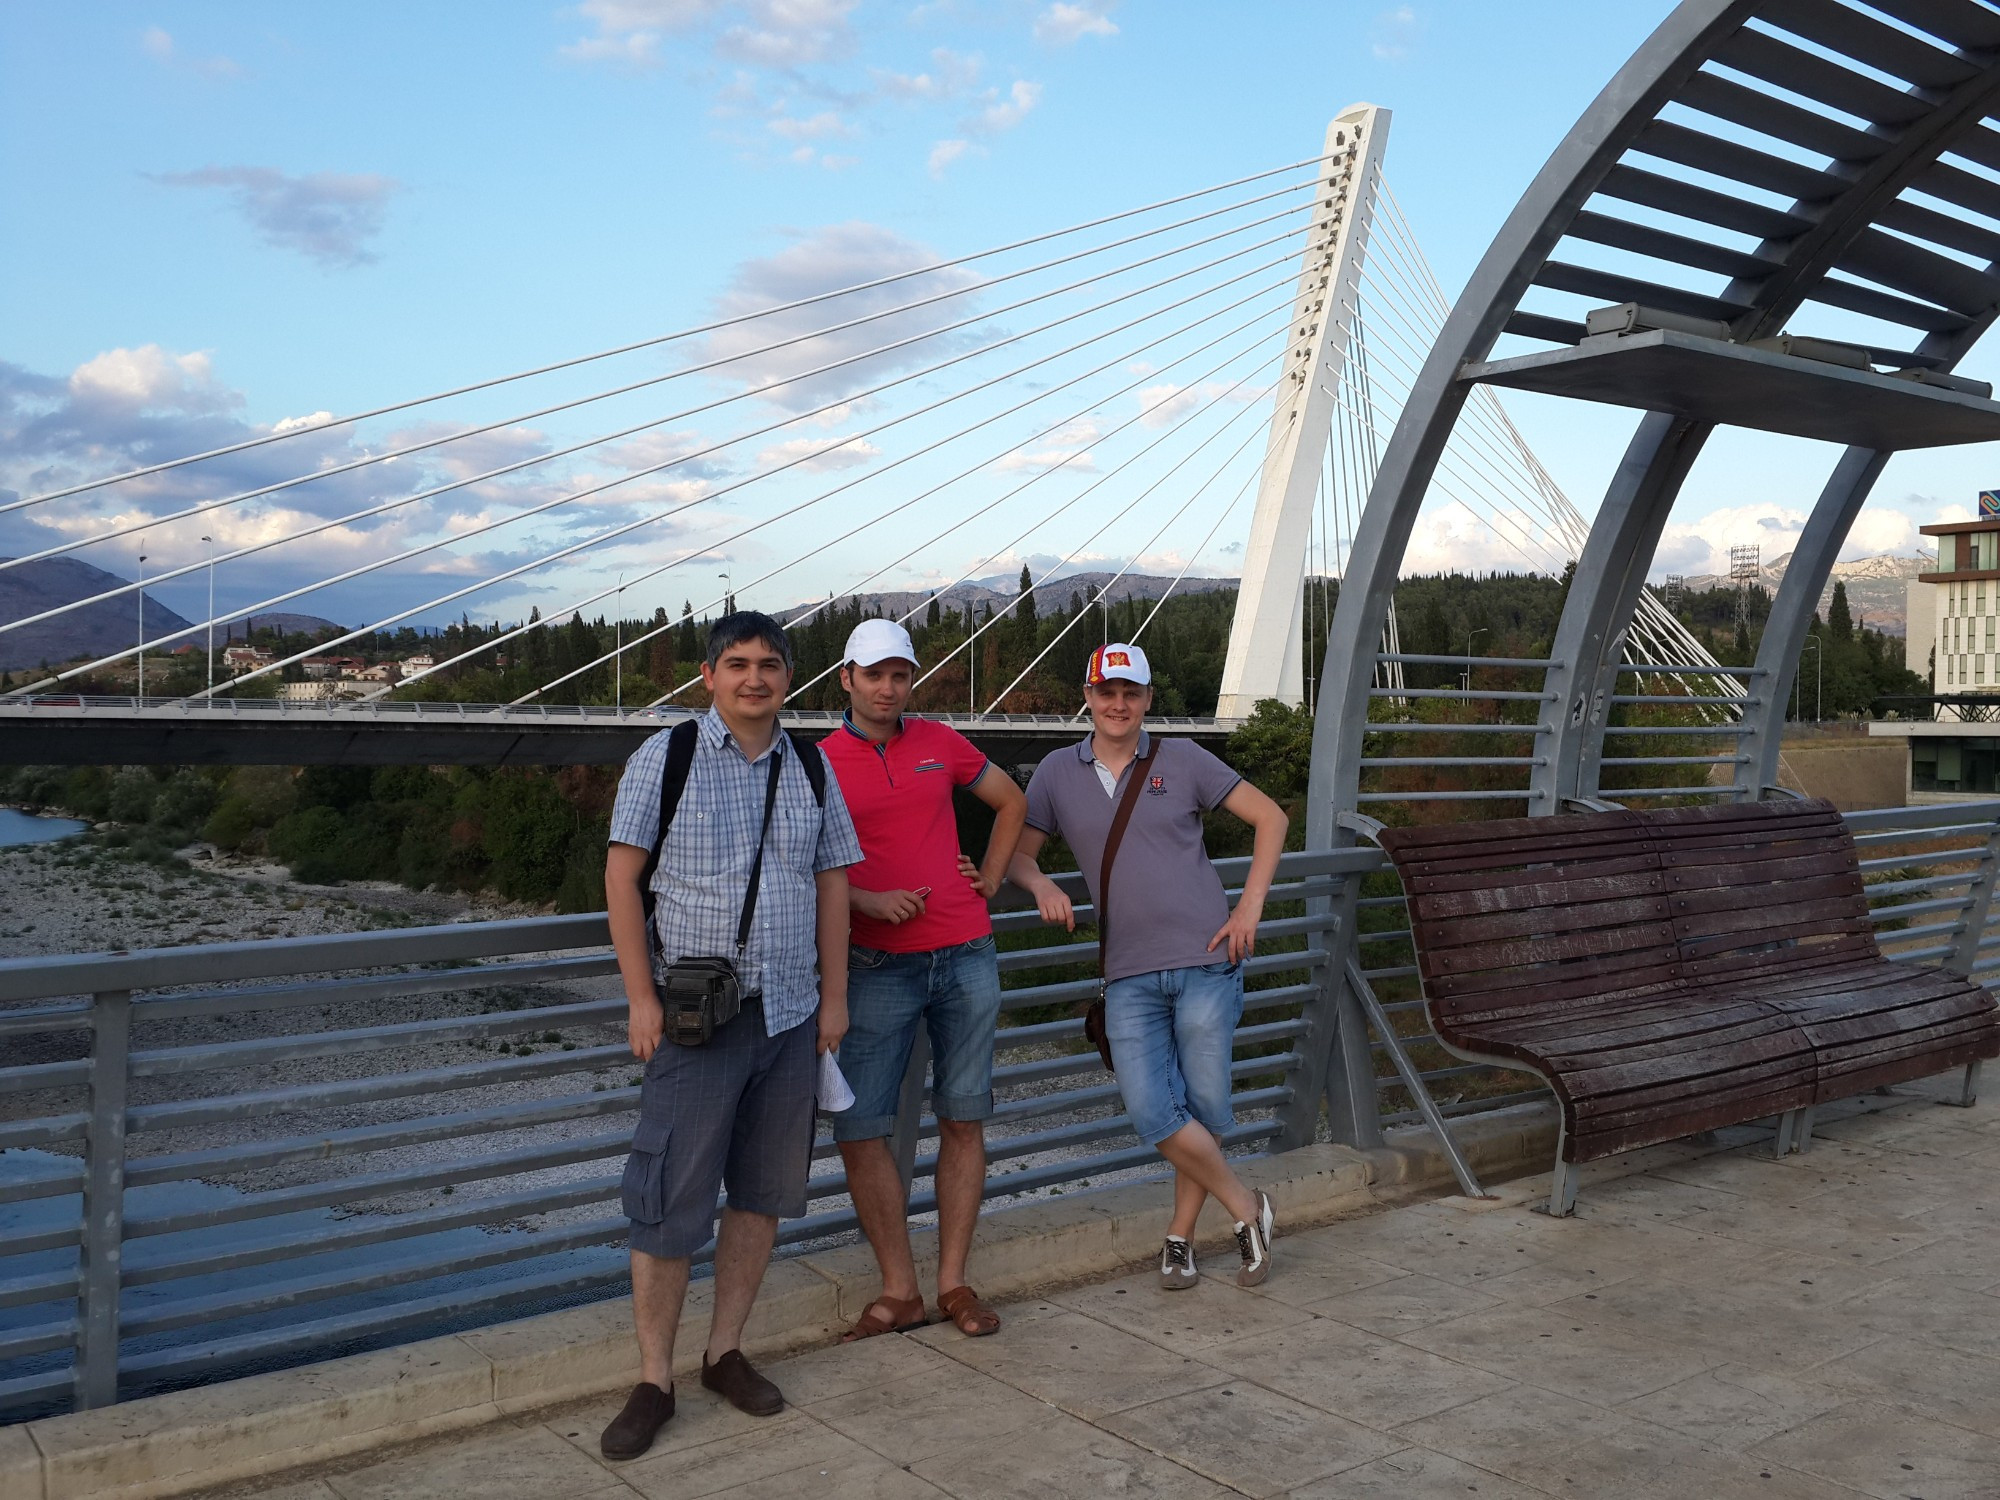 Подгорица. Мы на Московском мосту с видом на мост Тысячелетия. (06.09.2015)